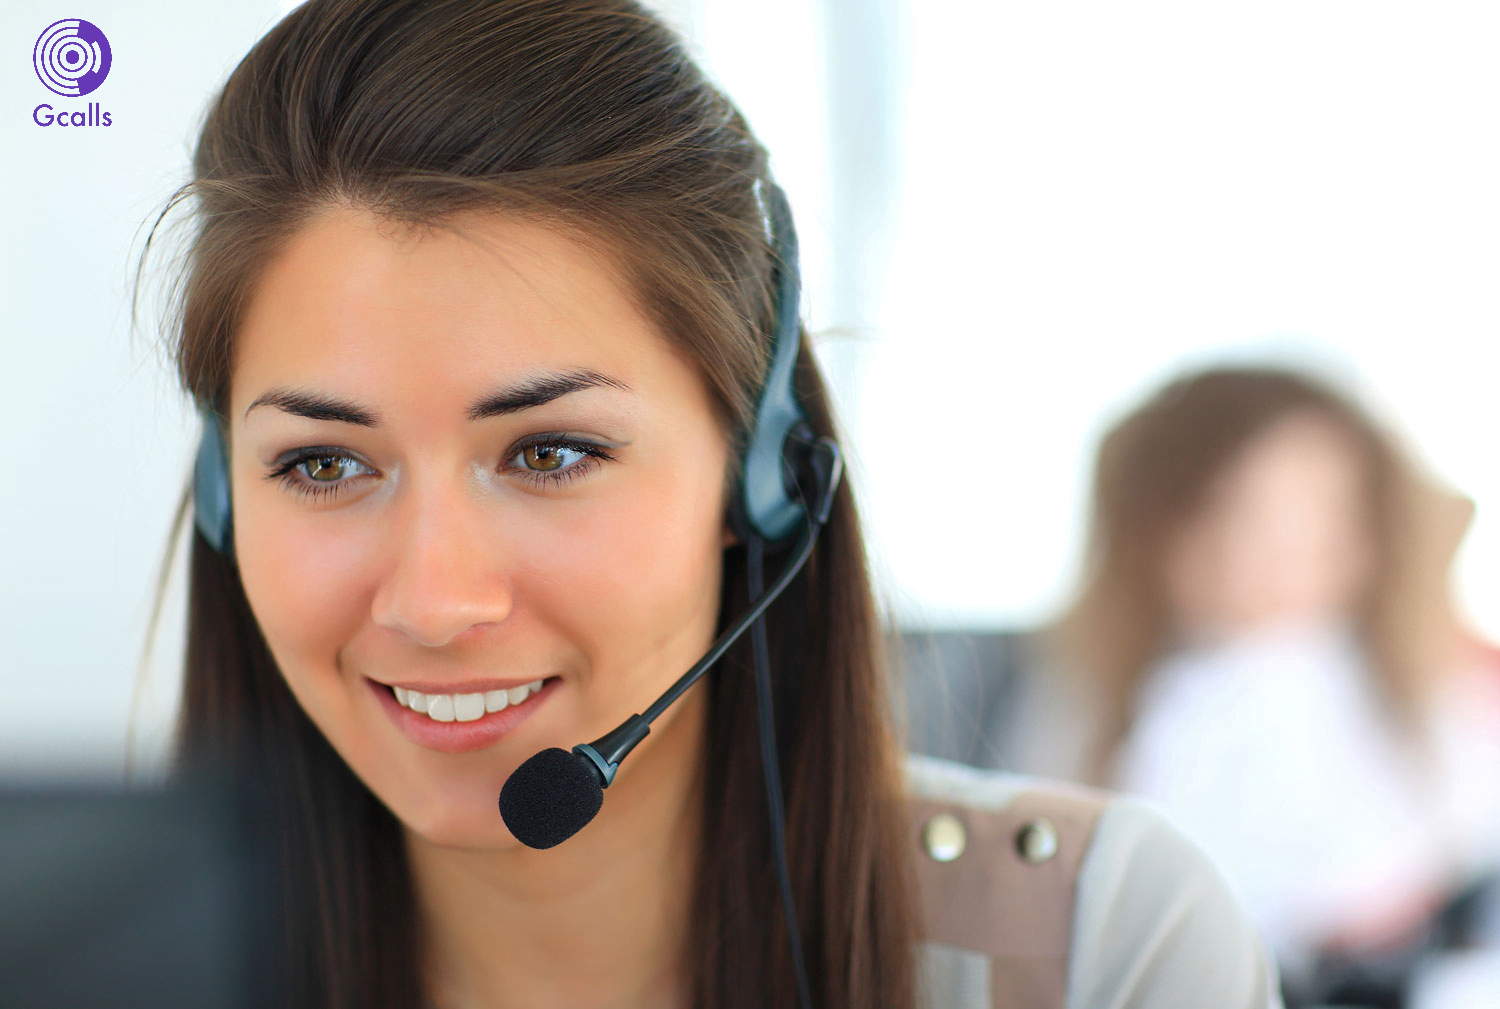 Dịch vụ tổng đài ảo là một giải pháp công nghệ cho phép tổ chức hoặc doanh nghiệp tạo ra một tổng đài điện thoại ảo để tiếp nhận và xử lý các cuộc gọi từ khách hàng hoặc đối tác